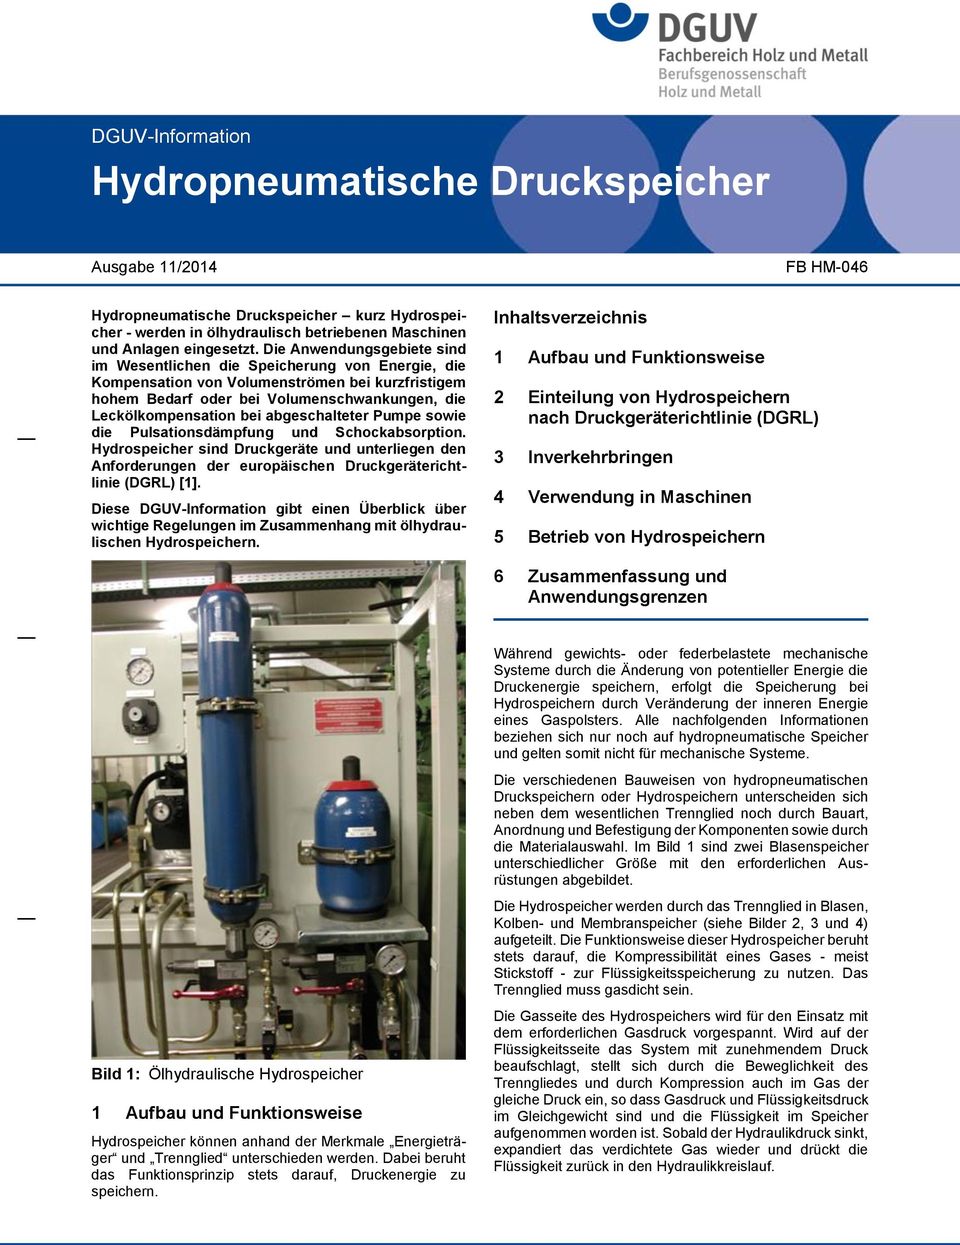 abgeschalteter Pumpe sowie die Pulsationsdämpfung und Schockabsorption. Hydrospeicher sind Druckgeräte und unterliegen den Anforderungen der europäischen Druckgeräterichtlinie (DGRL) [1].